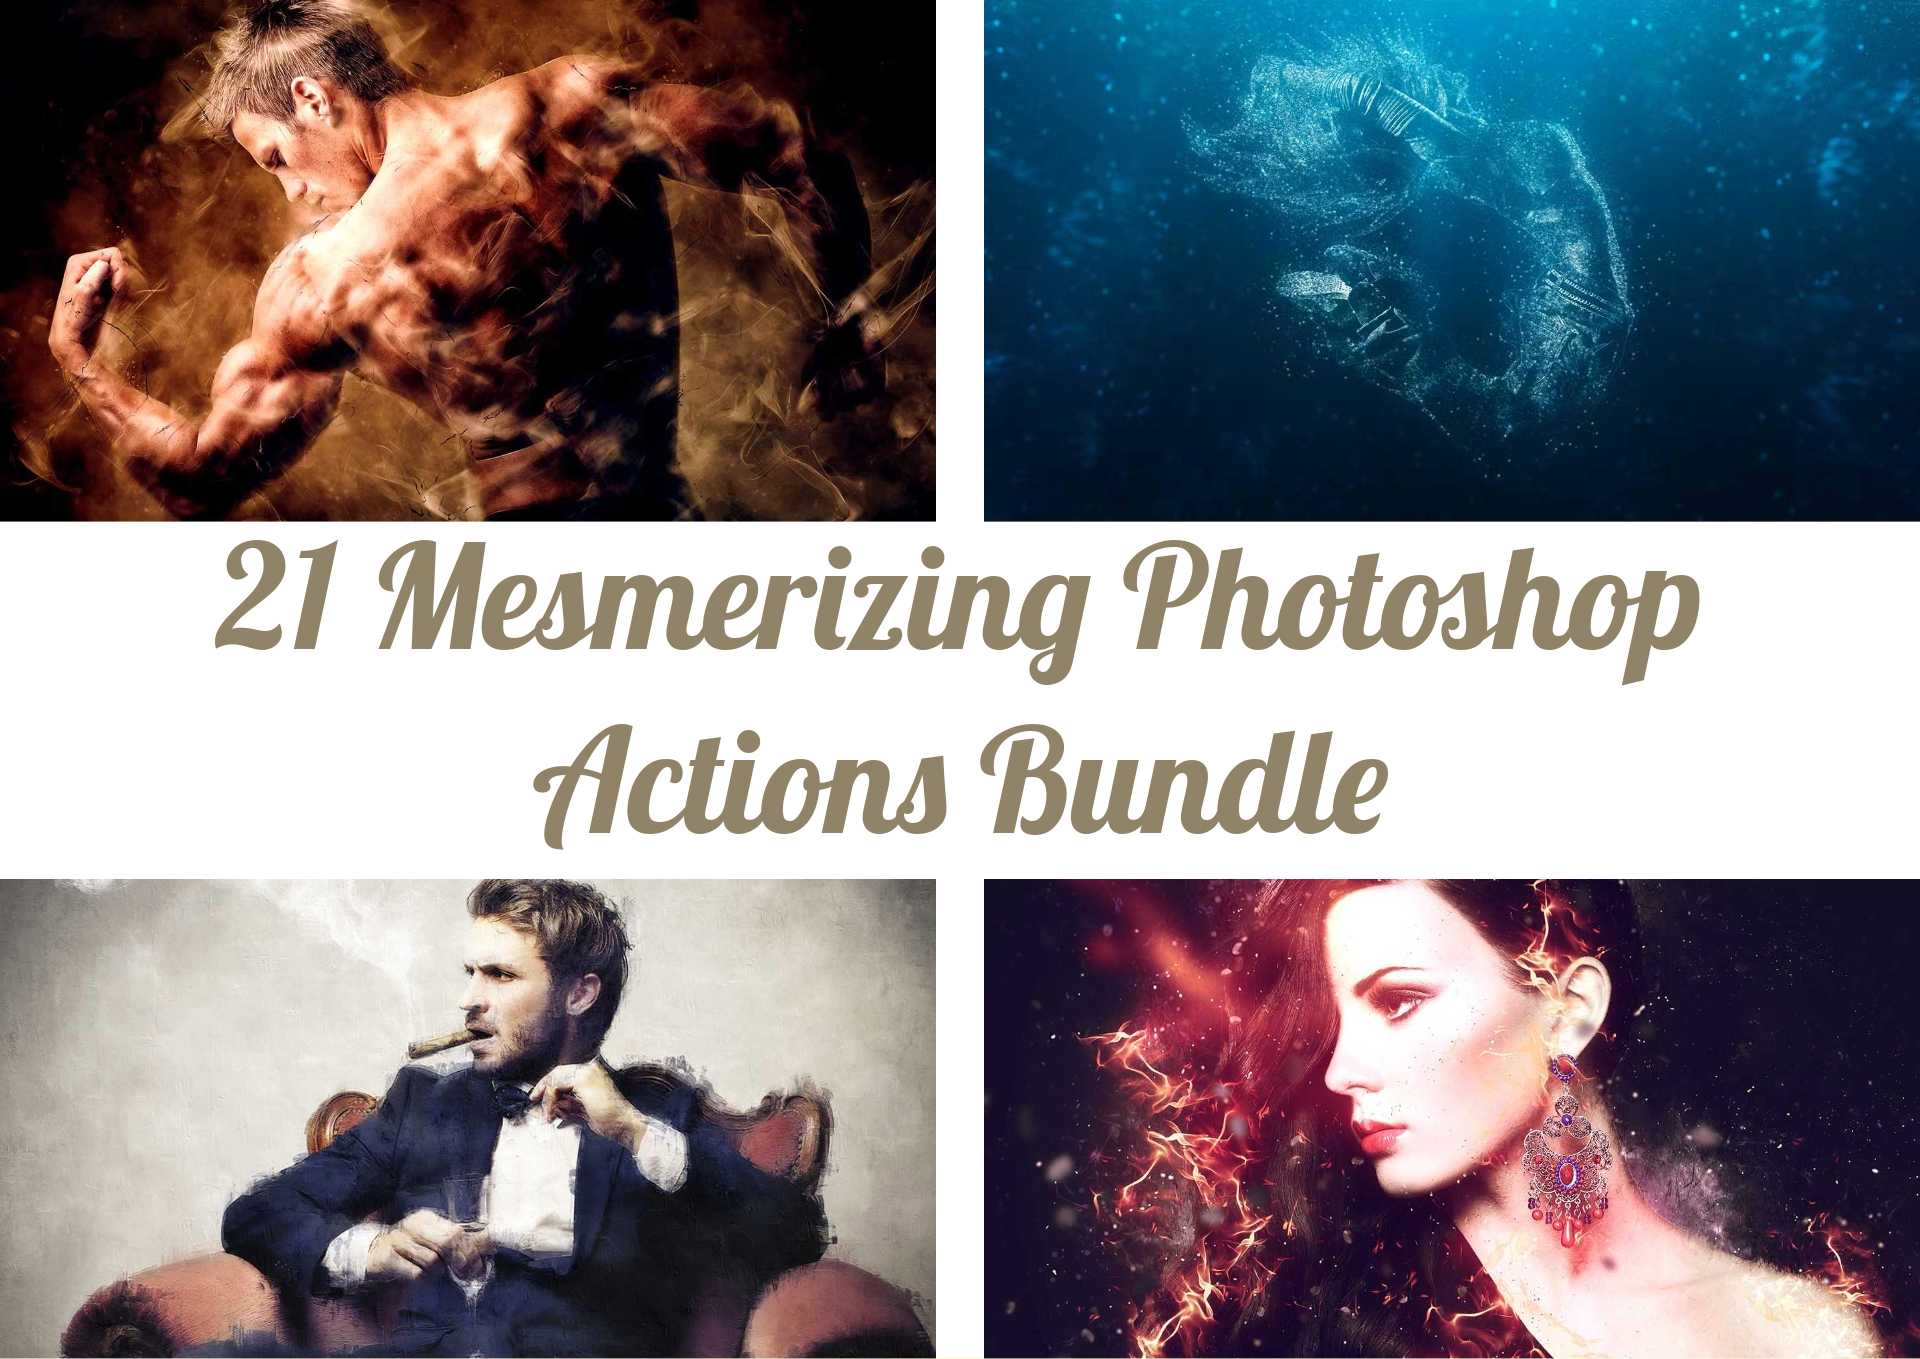 21 Mesmerizing Photoshop Actions Bundle - Photoboto